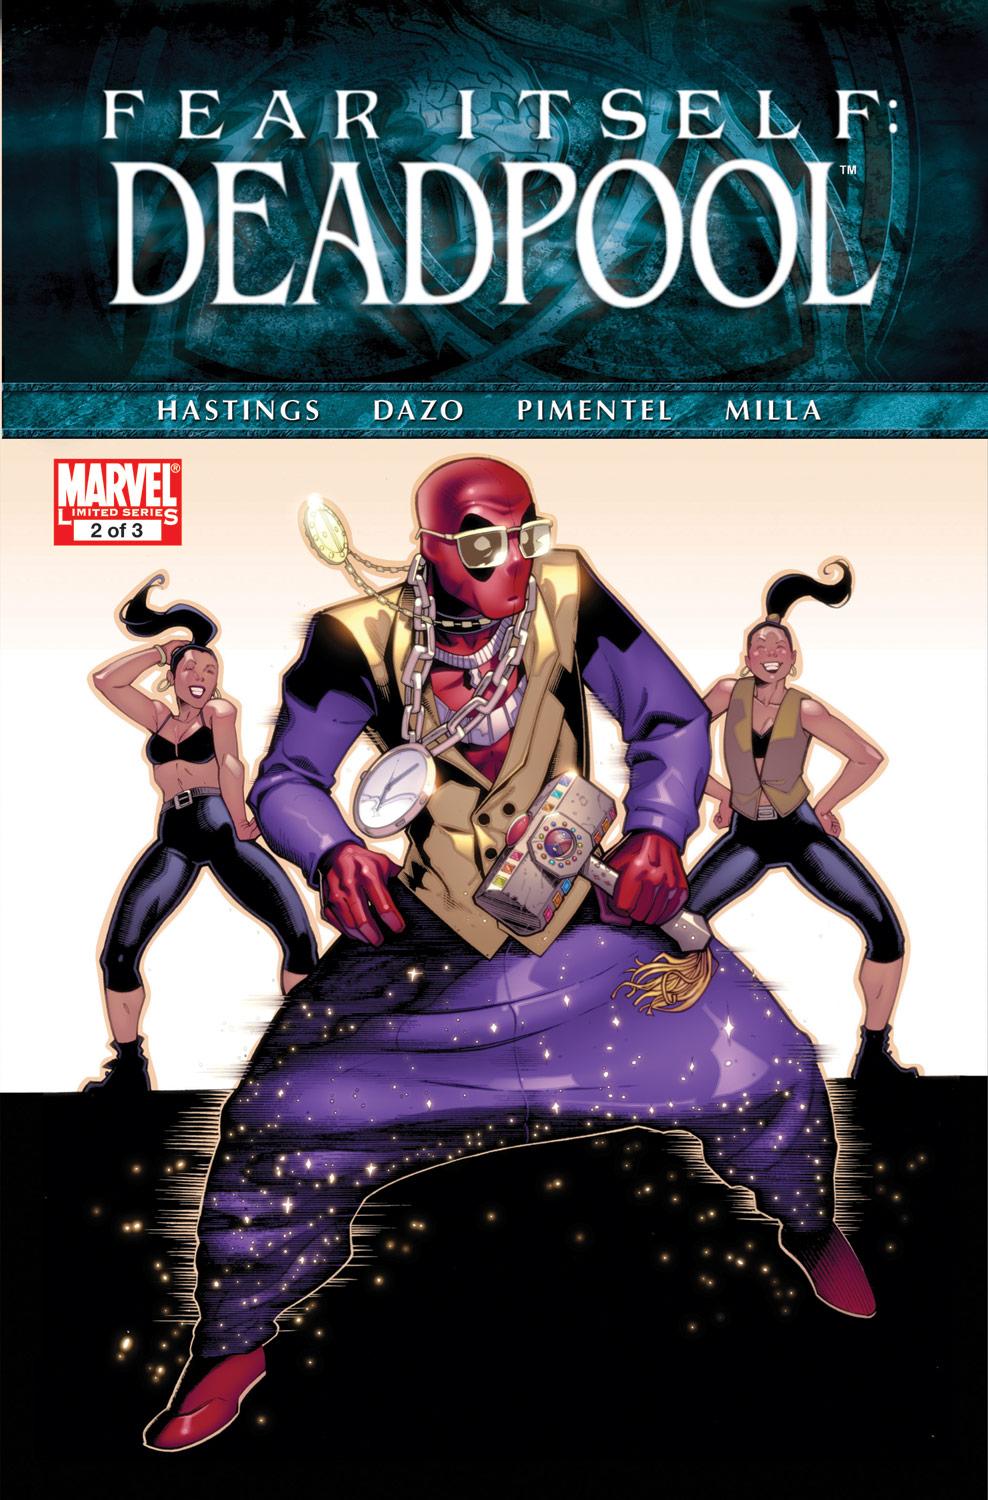 Fear Itself: Deadpool (2011) #2